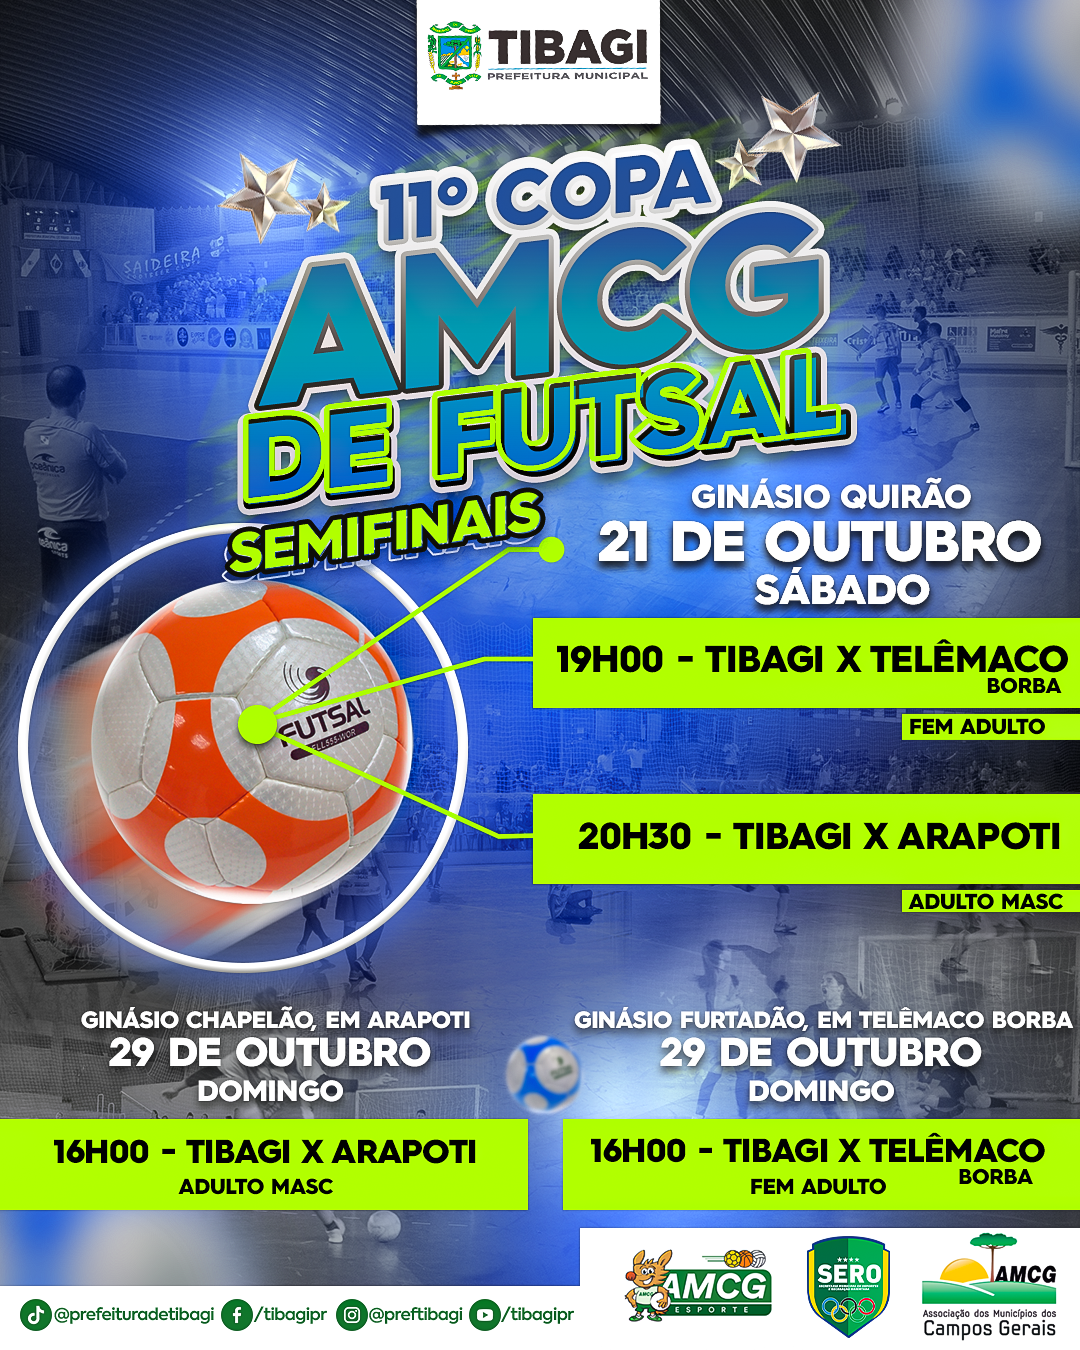 Semifinal da Copinha Feminina: times, jogos, datas e horários